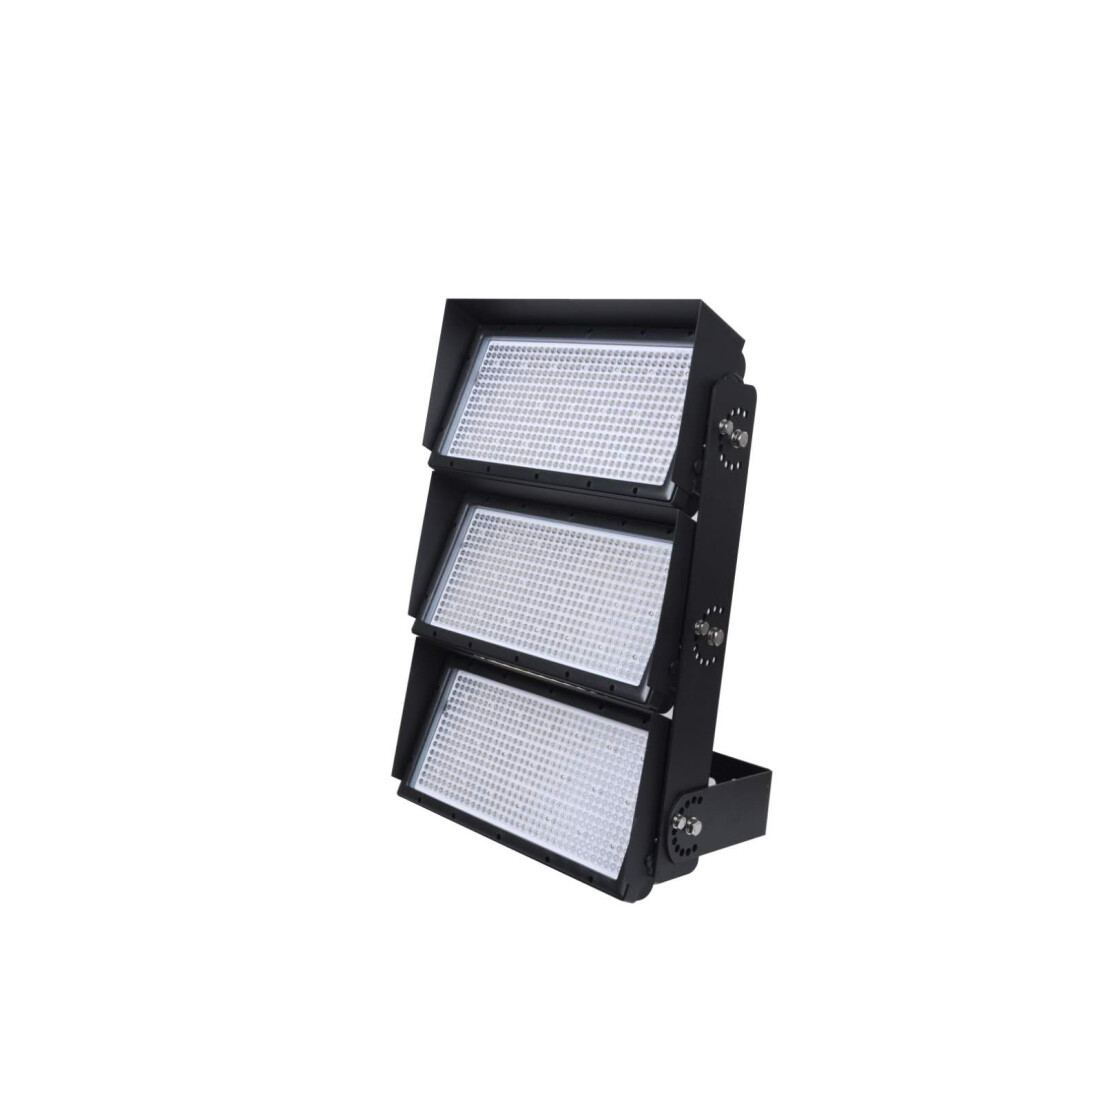 Spectrum - Projecteur LED noir étanche à détection - Noctis Lux 3 - 230V,  30W - 2800lm, 4000K - IP44 - Réf : SLI029050NW-DET - ELECdirect Vente  Matériel Électrique